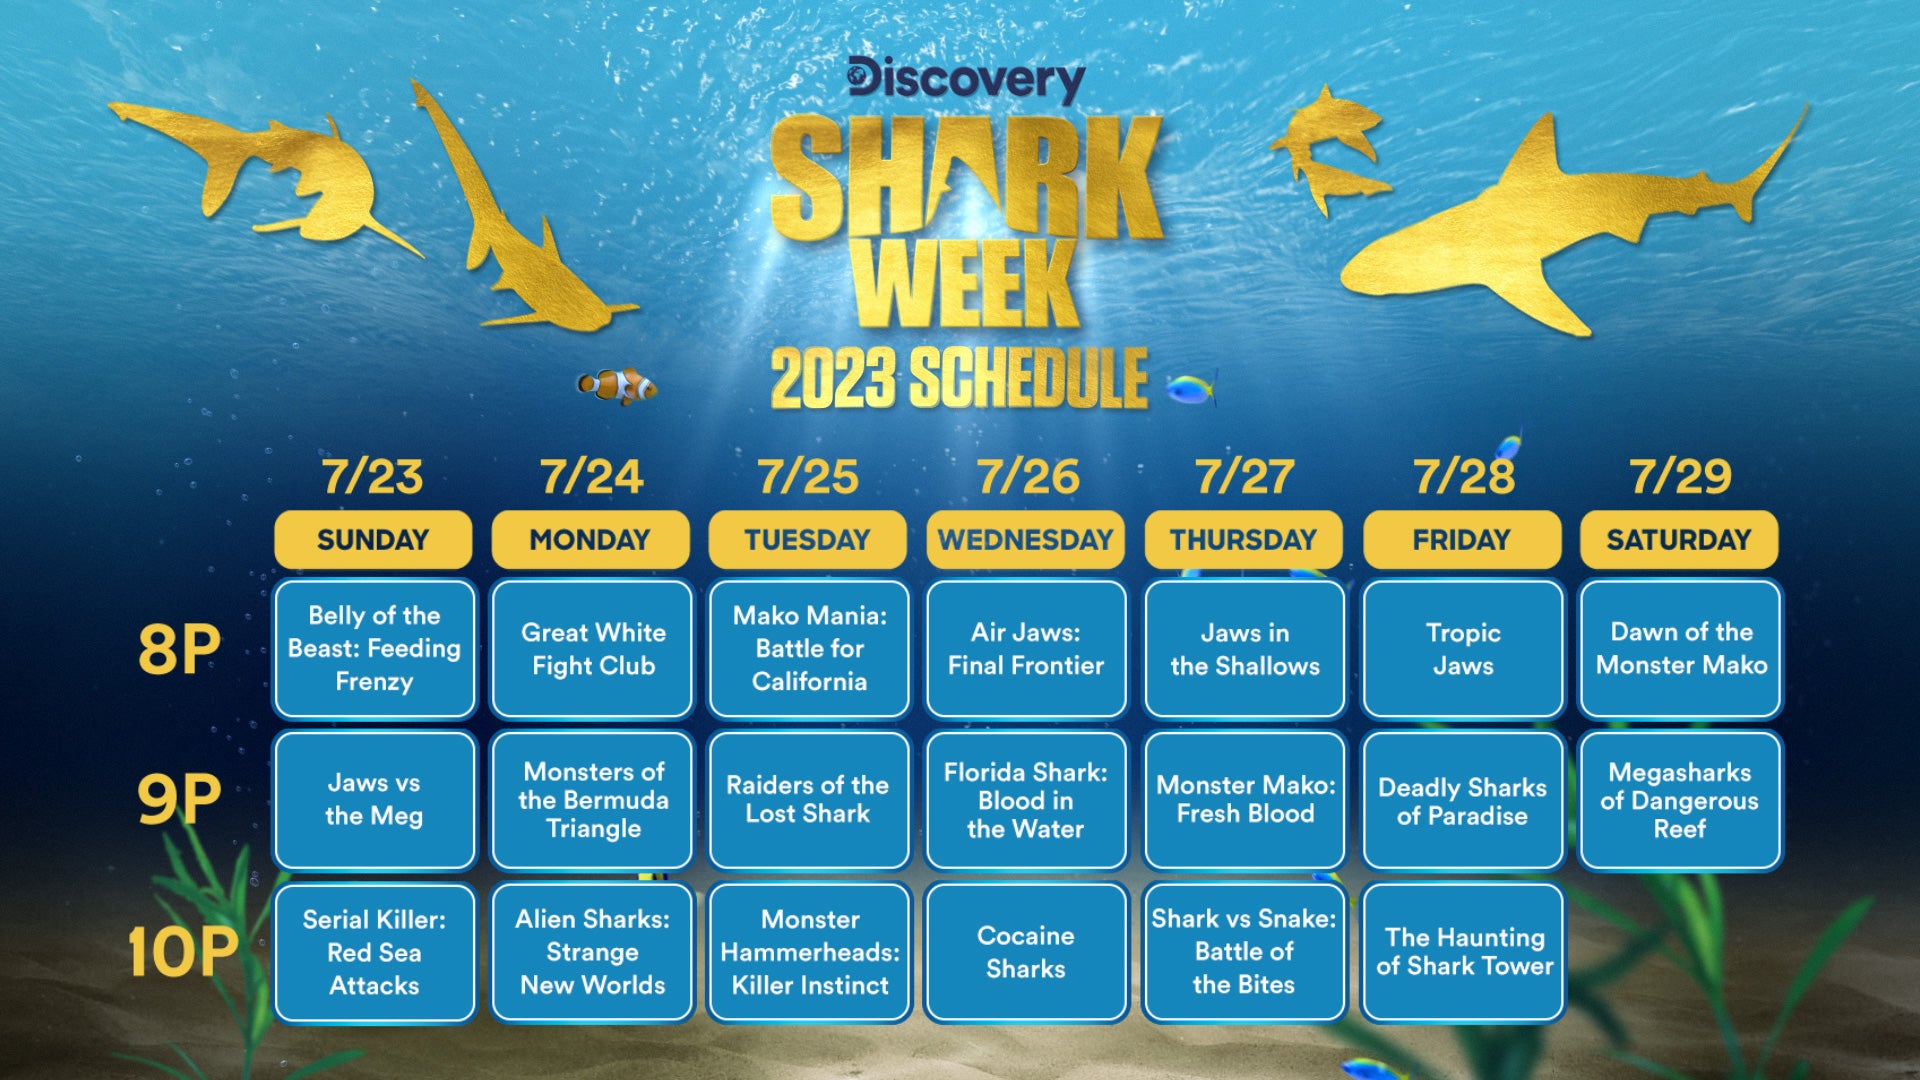 Shark Week 2023 Schedule, how to watch, stream episodes